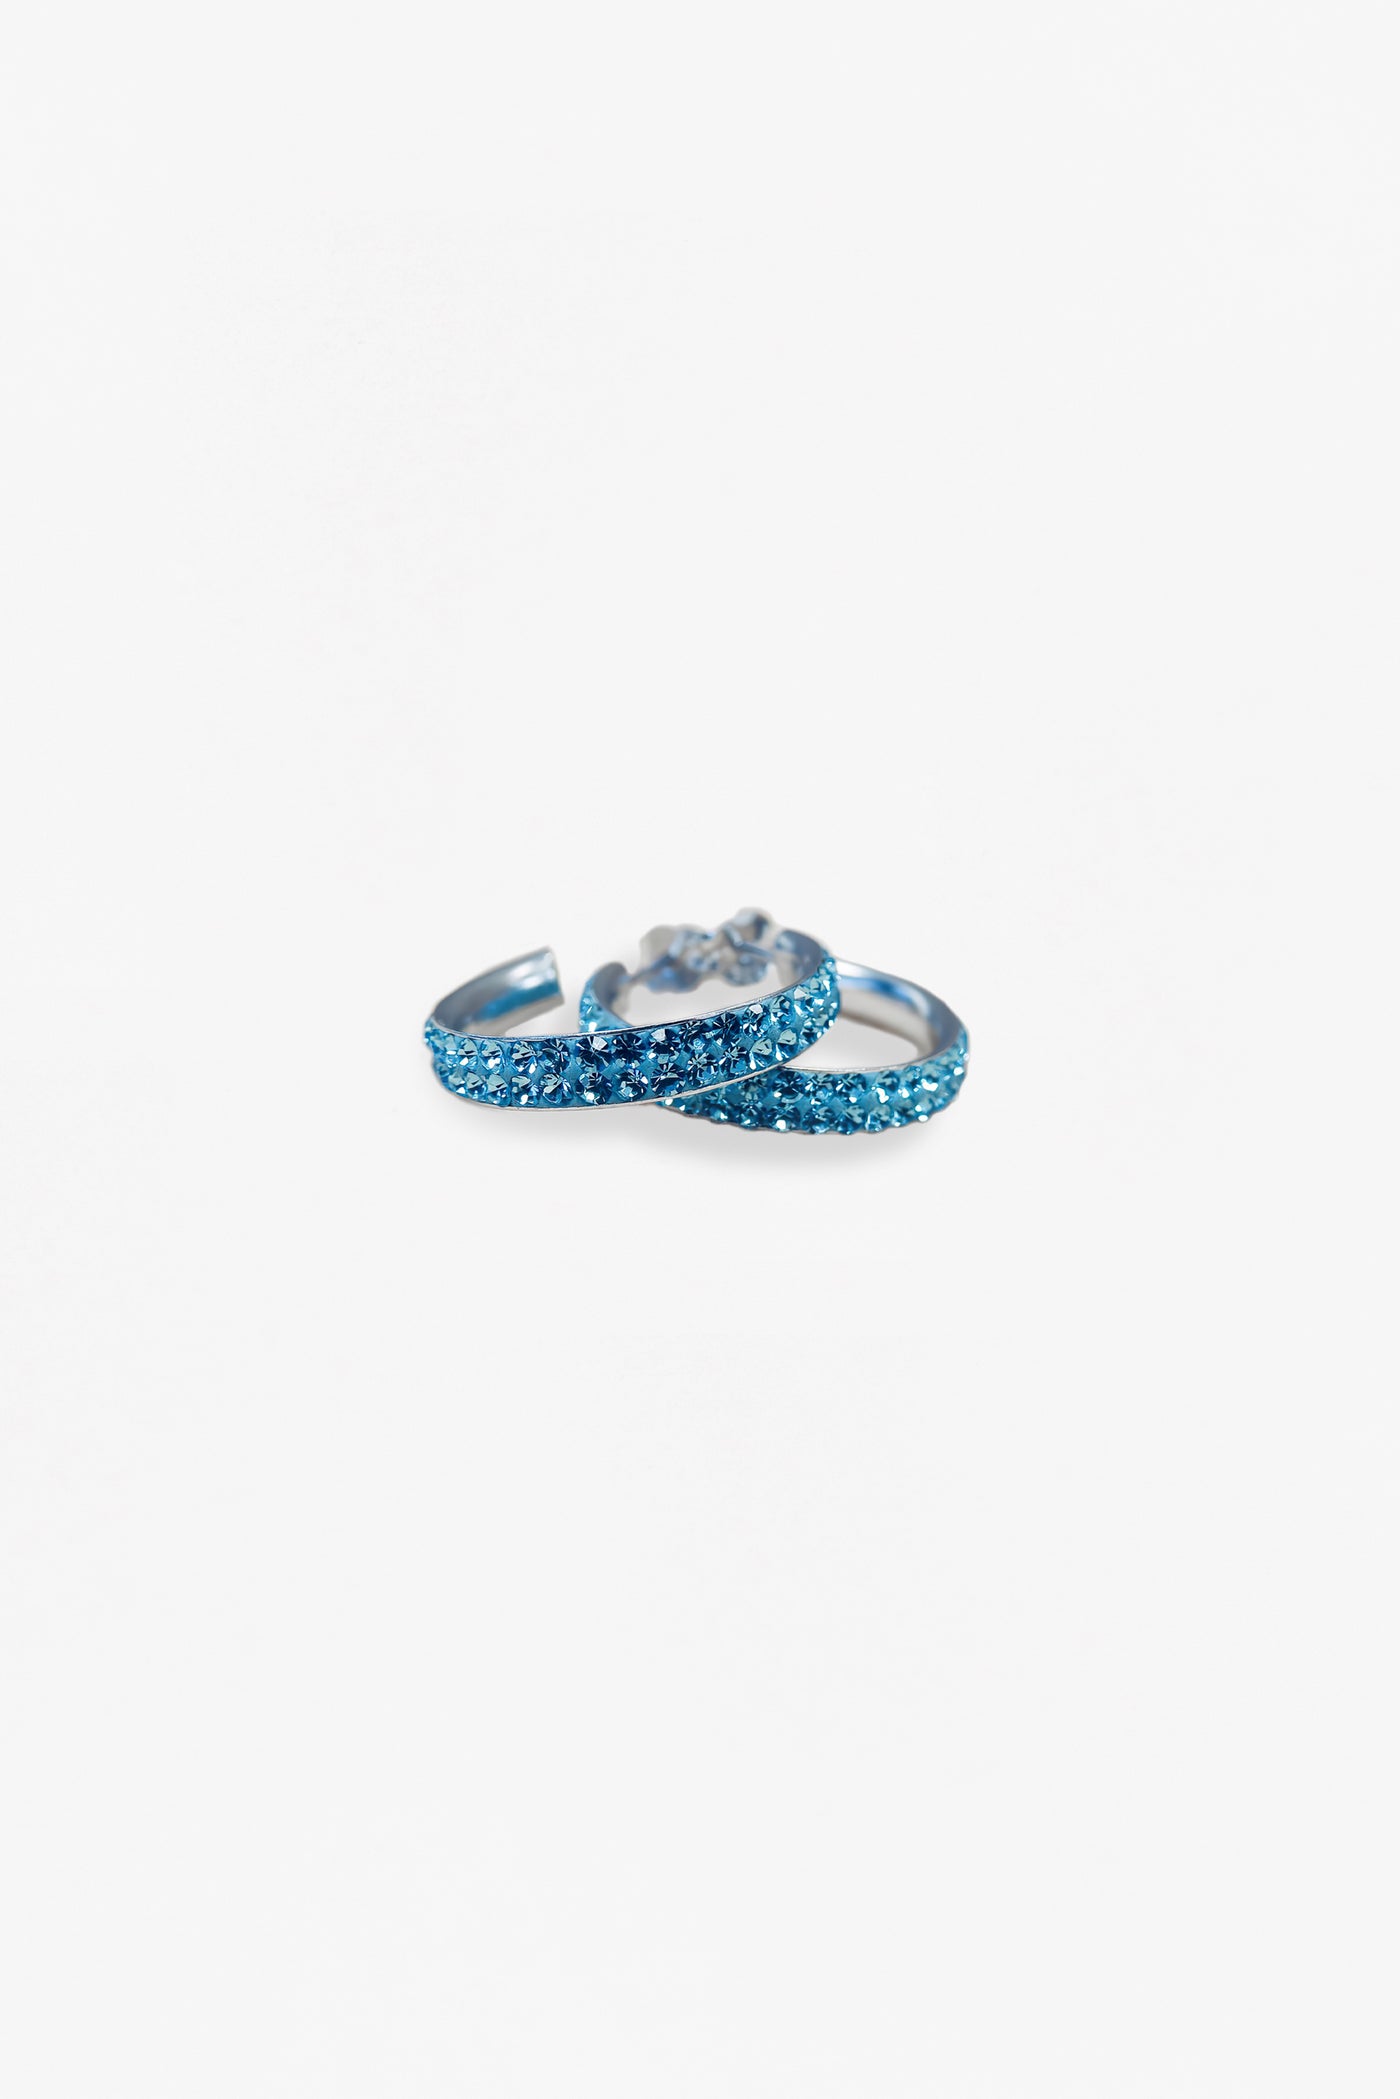 1" Swarovski Aquamarine Crystal Hoop Earrings | Annie and Sisters